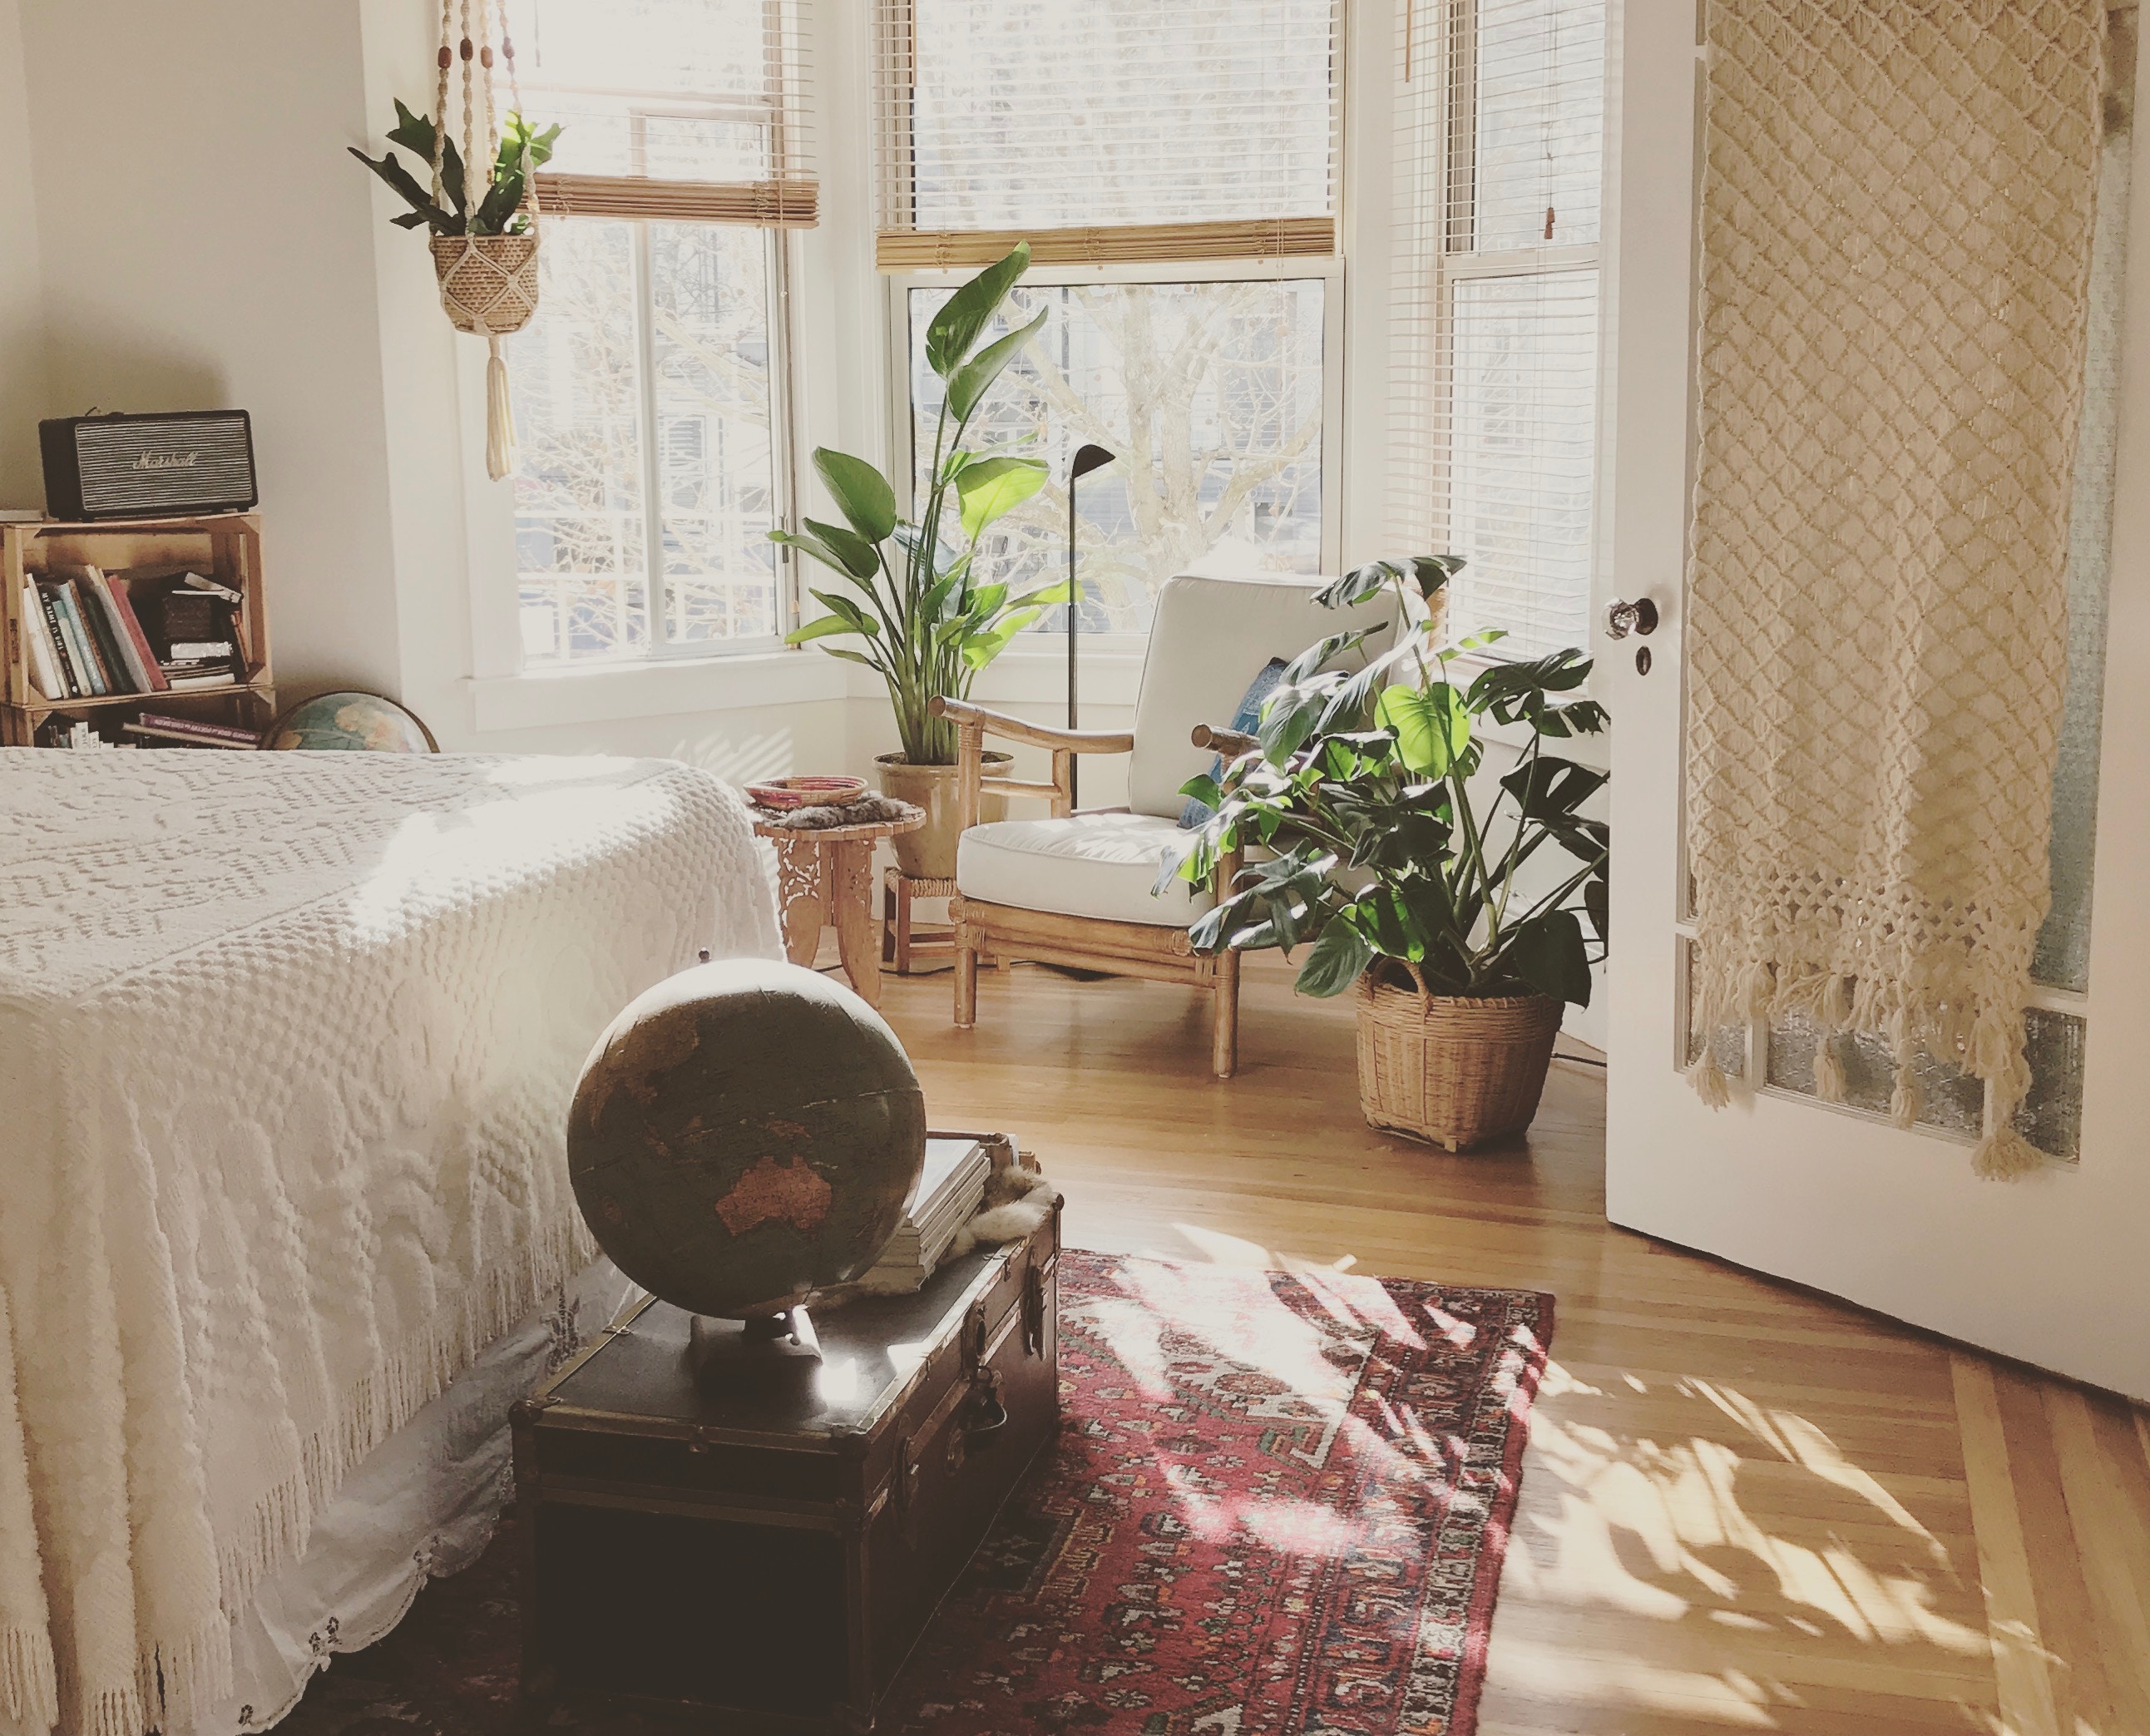 Comment aménager une chambre agréable à vivre ?